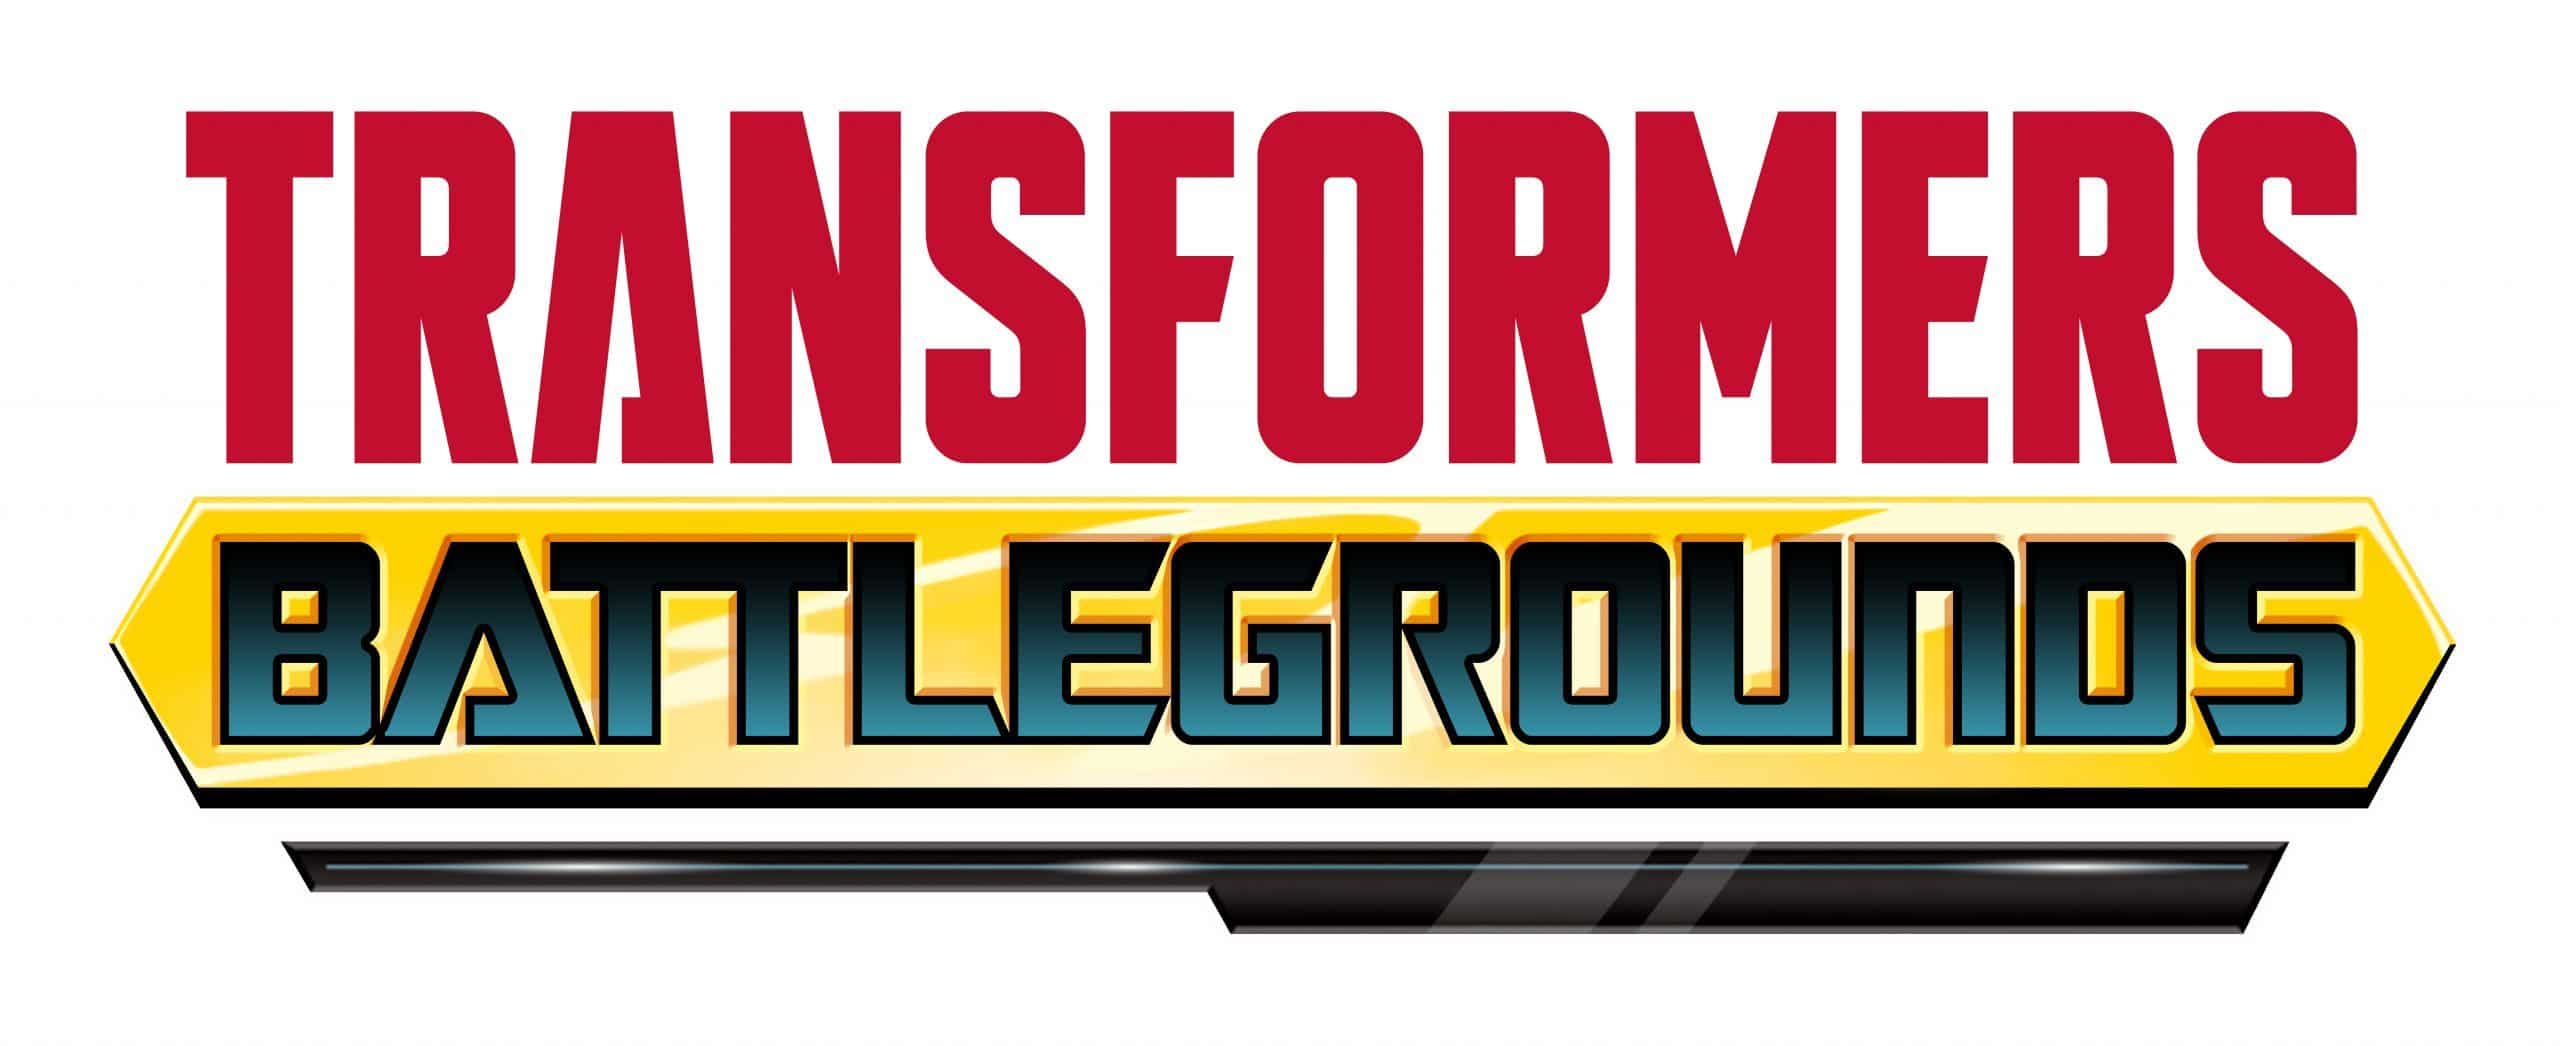 Transformers: Battlegrounds anunciado para consolas y PC